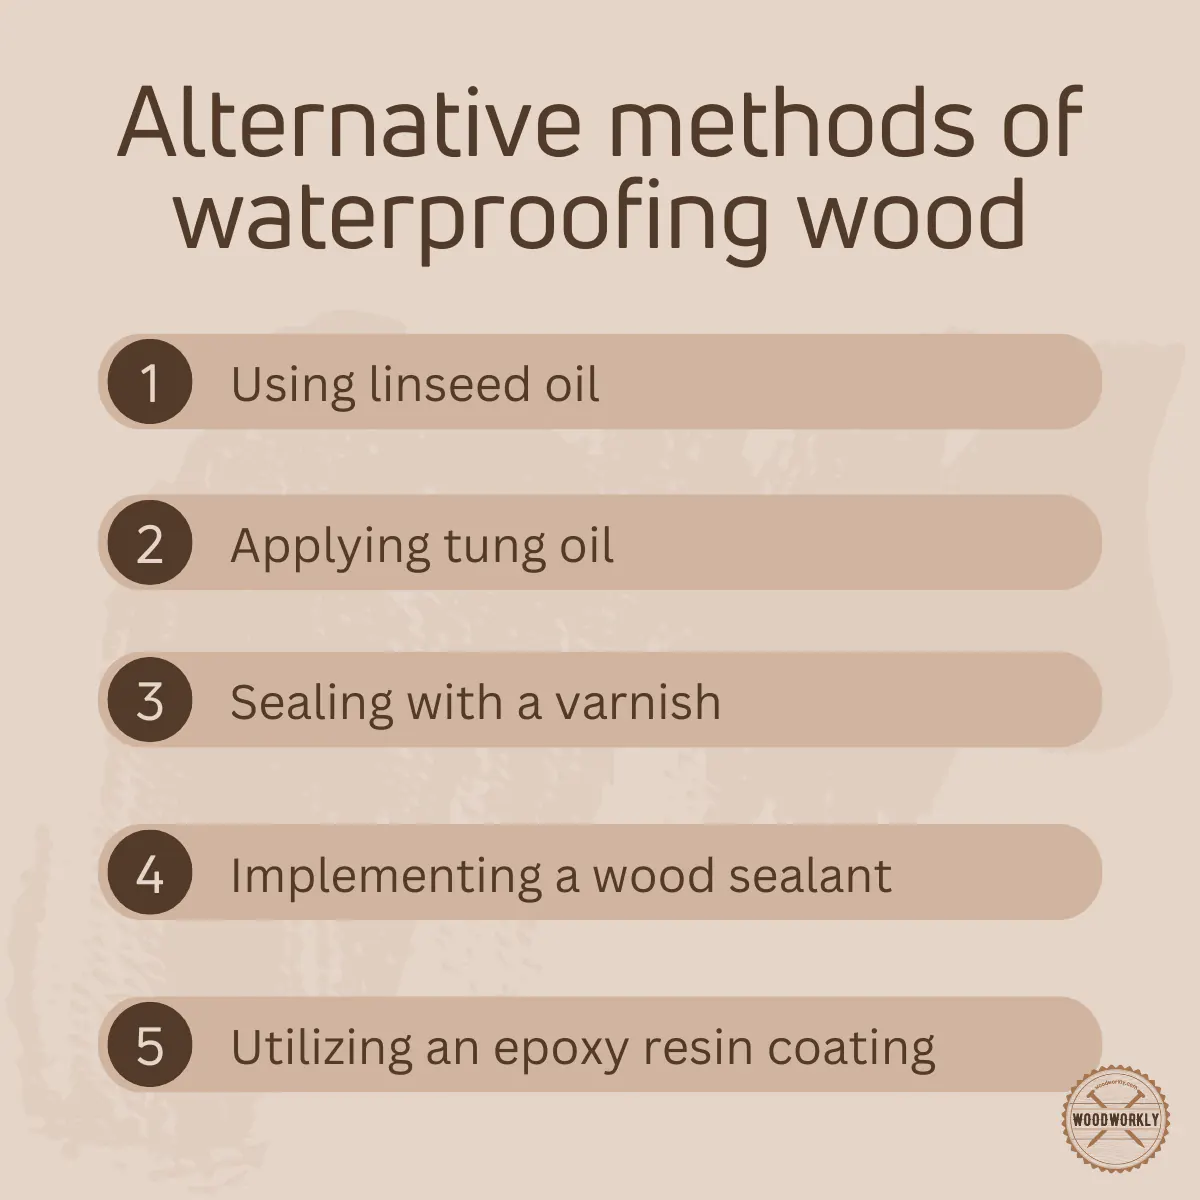 Alternative methods of waterproofing wood